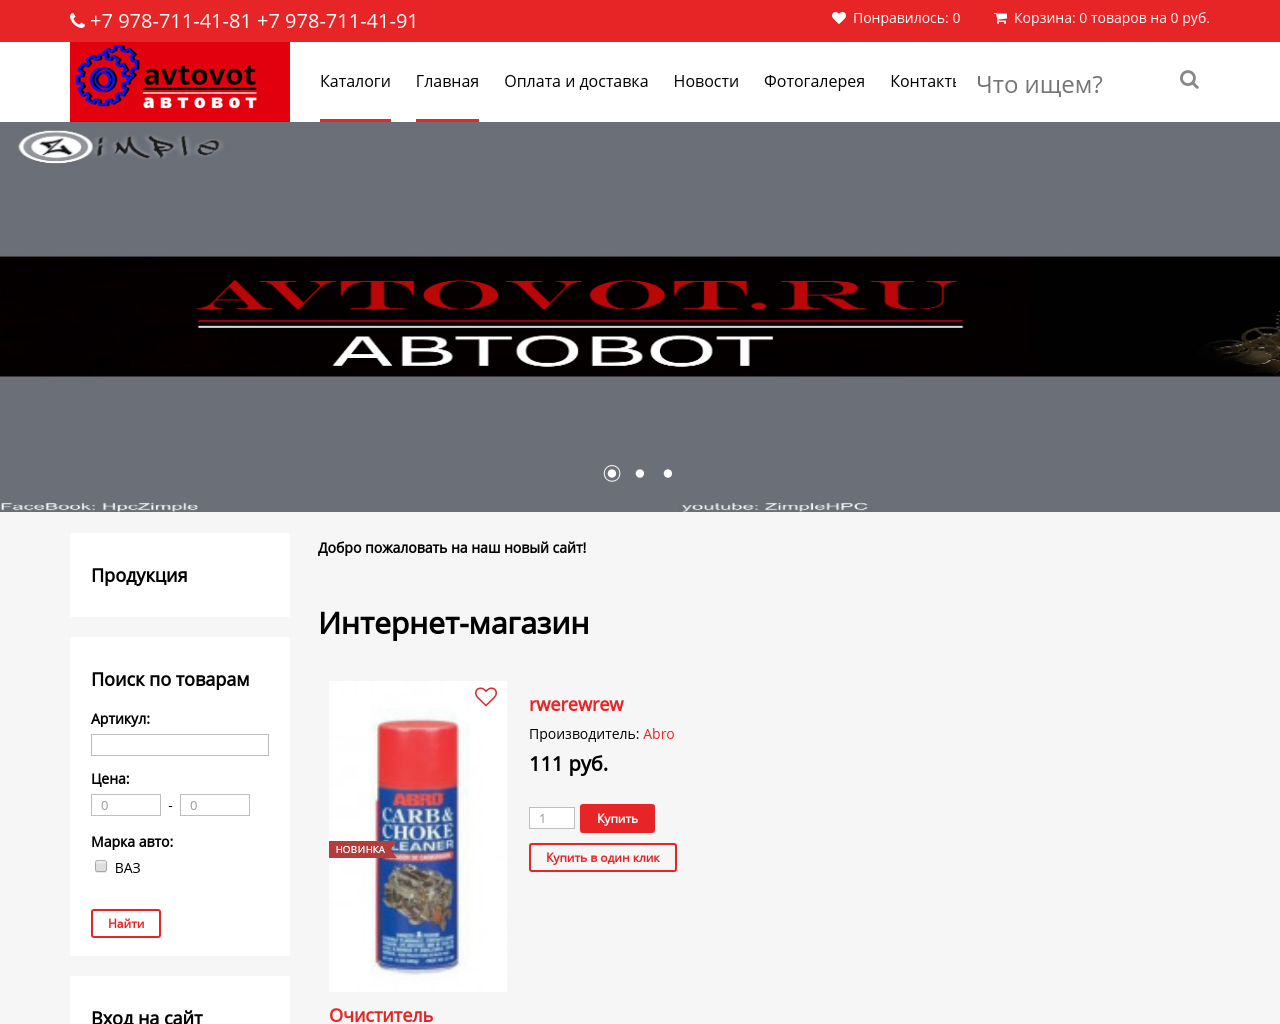 Изображение сайта avtovot.ru в разрешении 1280x1024